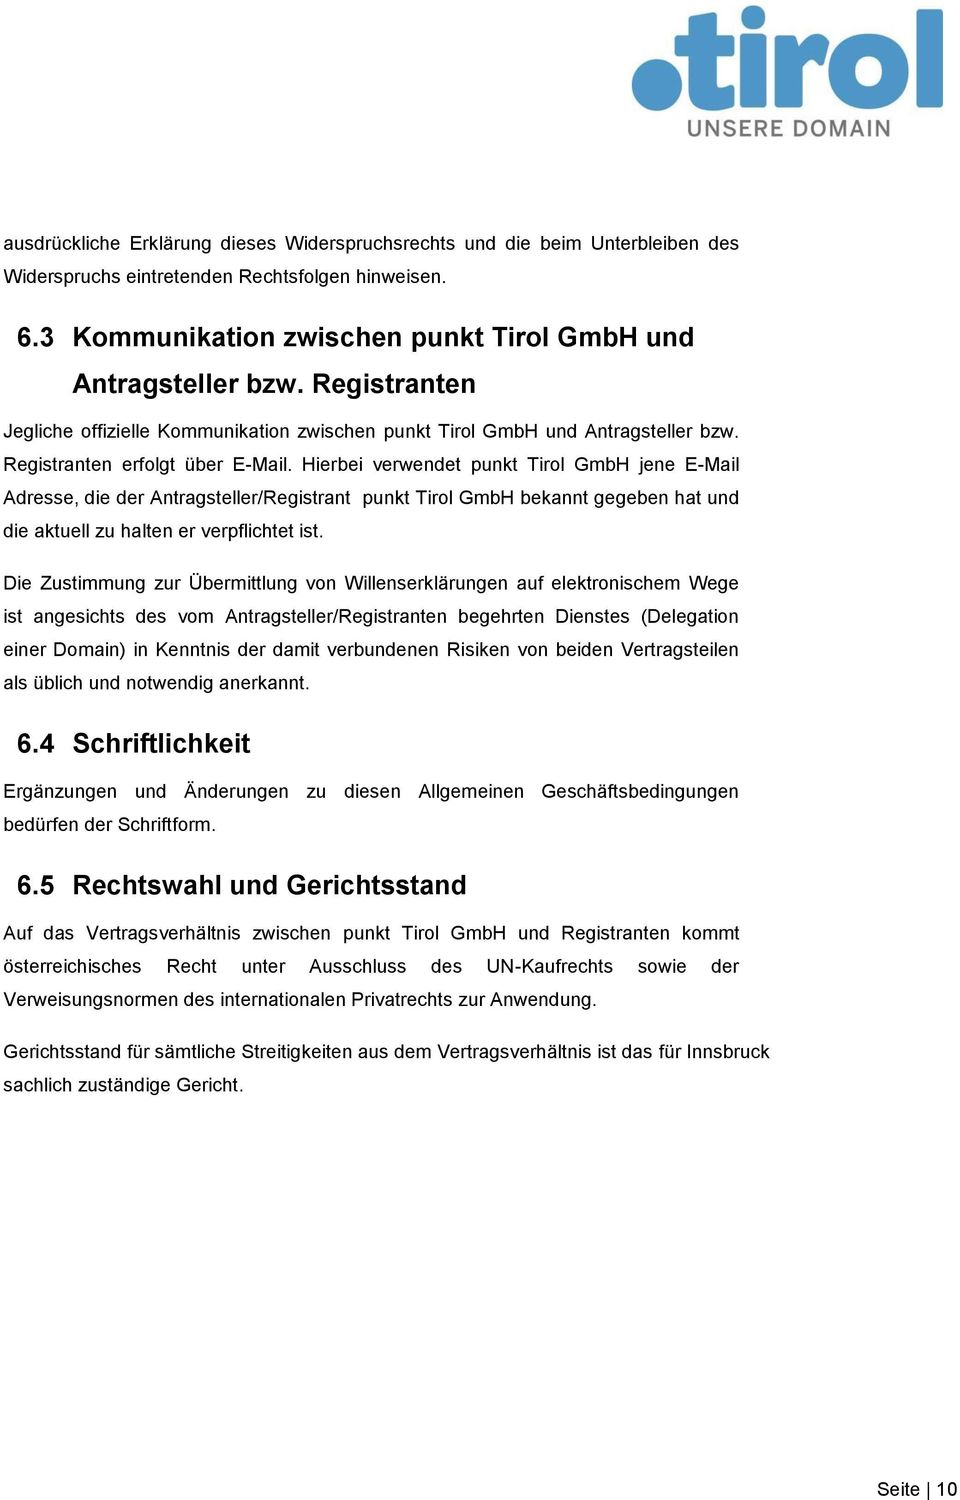 Hierbei verwendet punkt Tirol GmbH jene E-Mail Adresse, die der Antragsteller/Registrant punkt Tirol GmbH bekannt gegeben hat und die aktuell zu halten er verpflichtet ist.